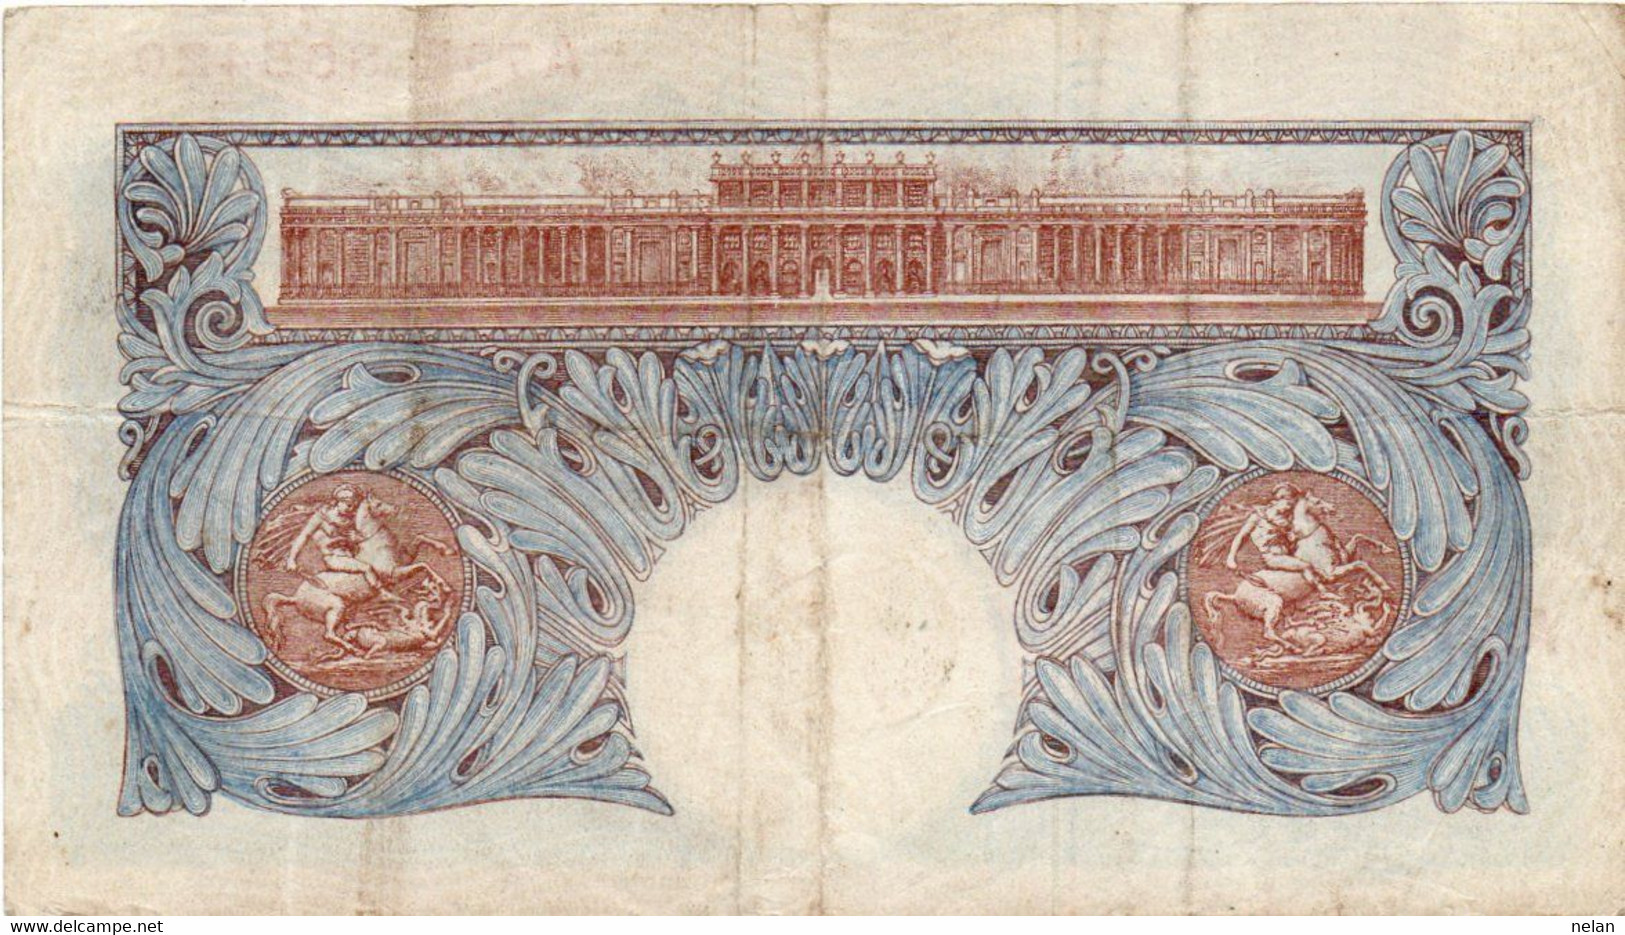 Bank Of England 1 Pound 1940 P-367a  K. O. Peppiatt - 1 Pond